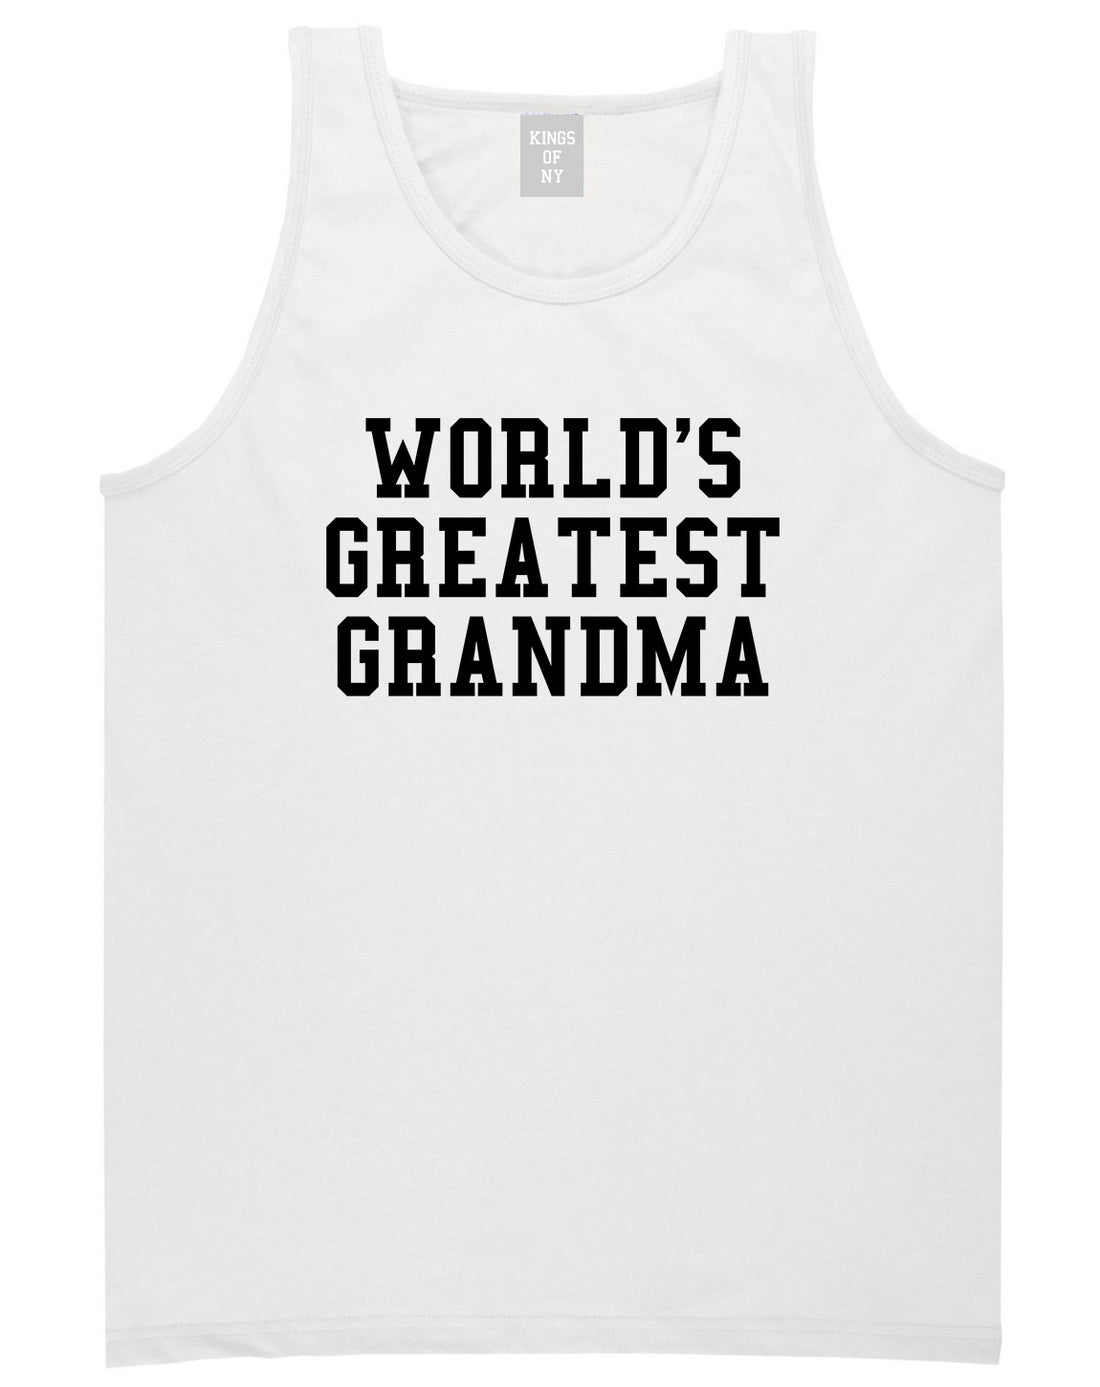 Worlds Greatest Grandma Birthday Gift Mens Tank Top T-Shirt White